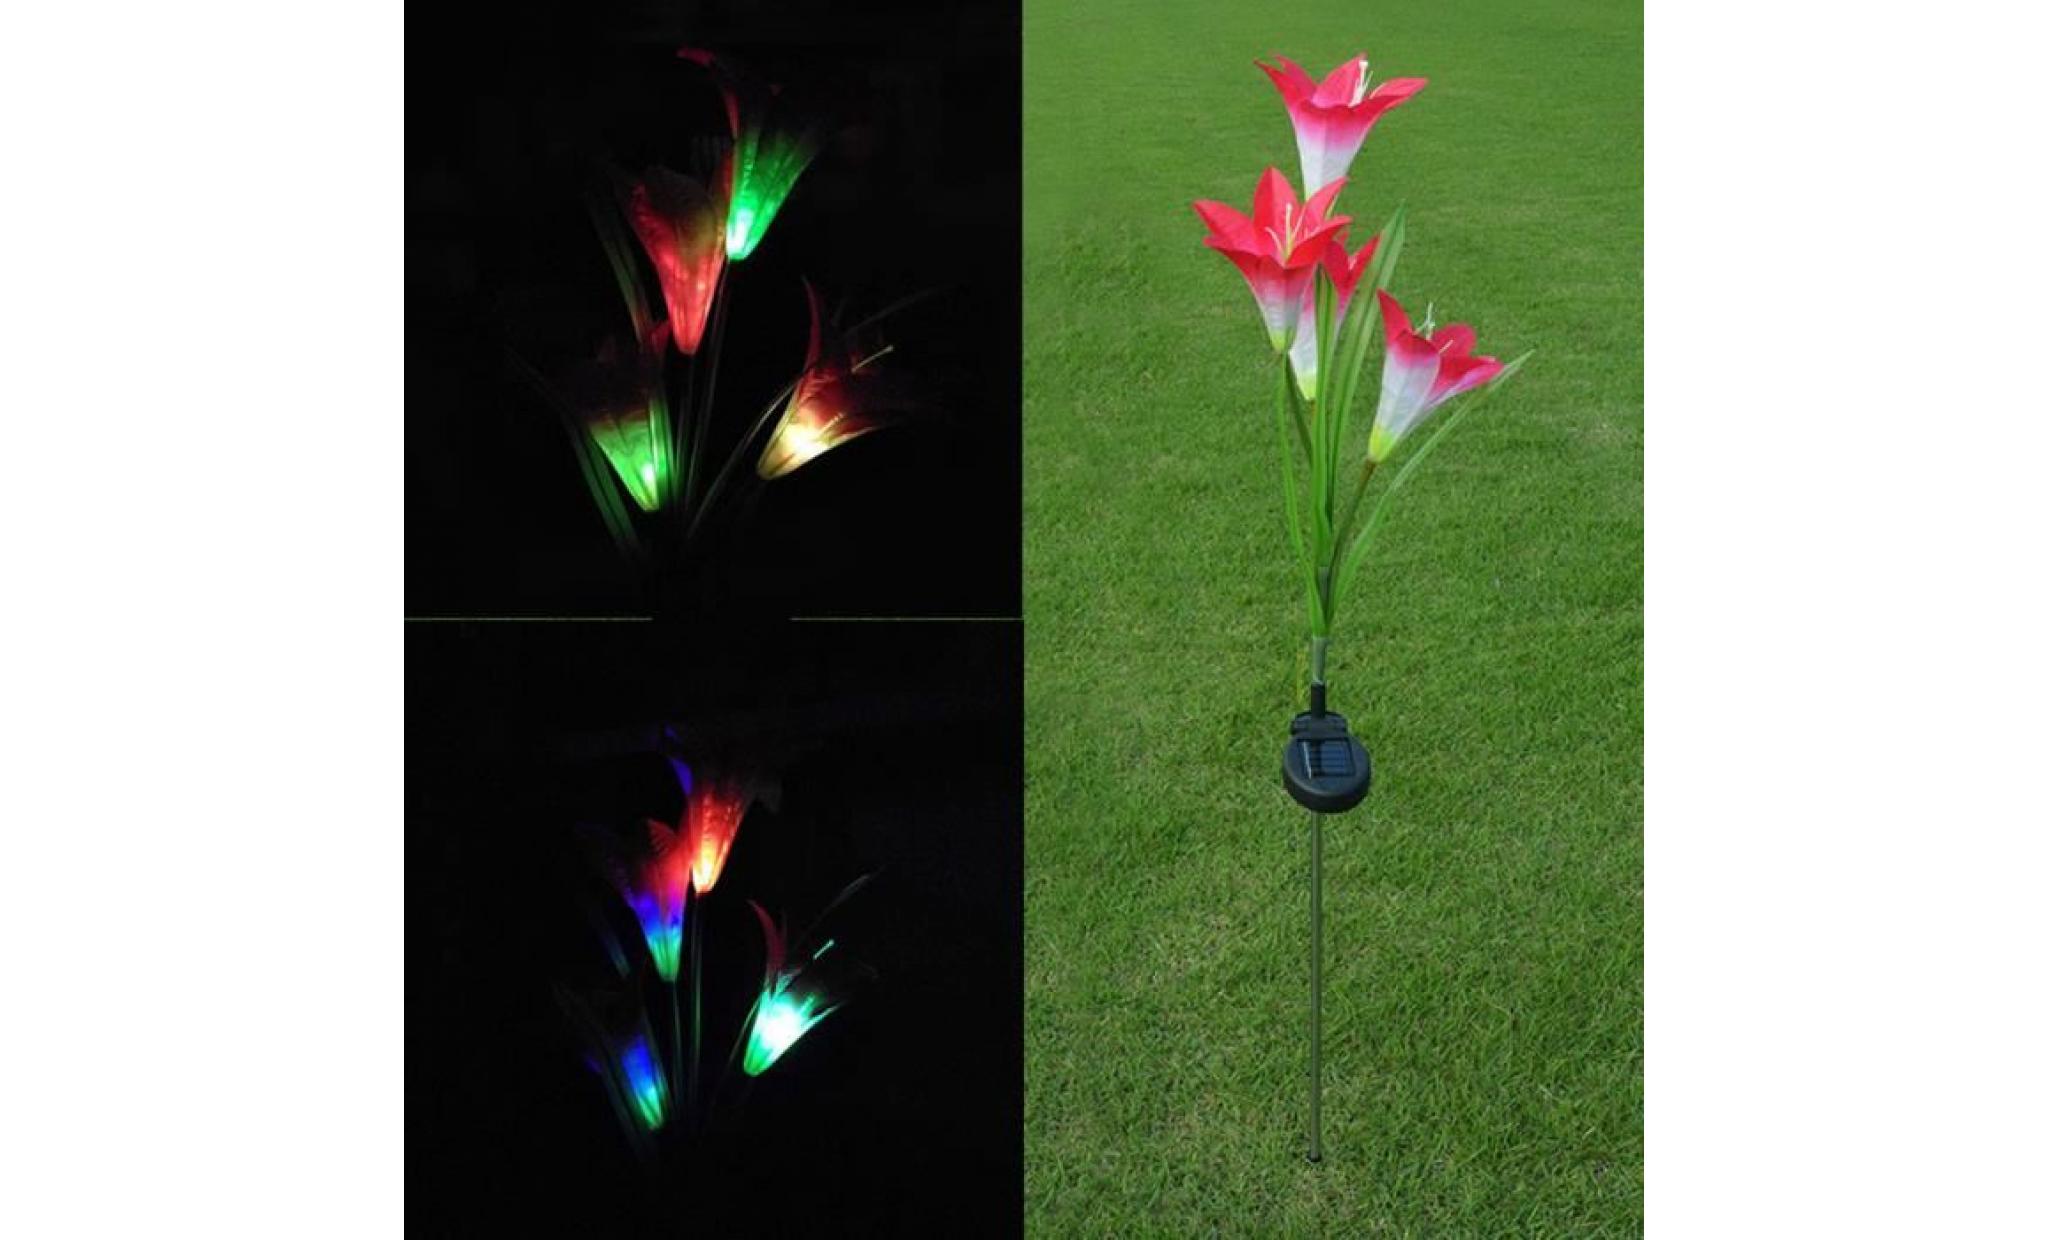 changement de couleur coloré 4 lanterne solaire lily lanterne extérieure à led simulation a62